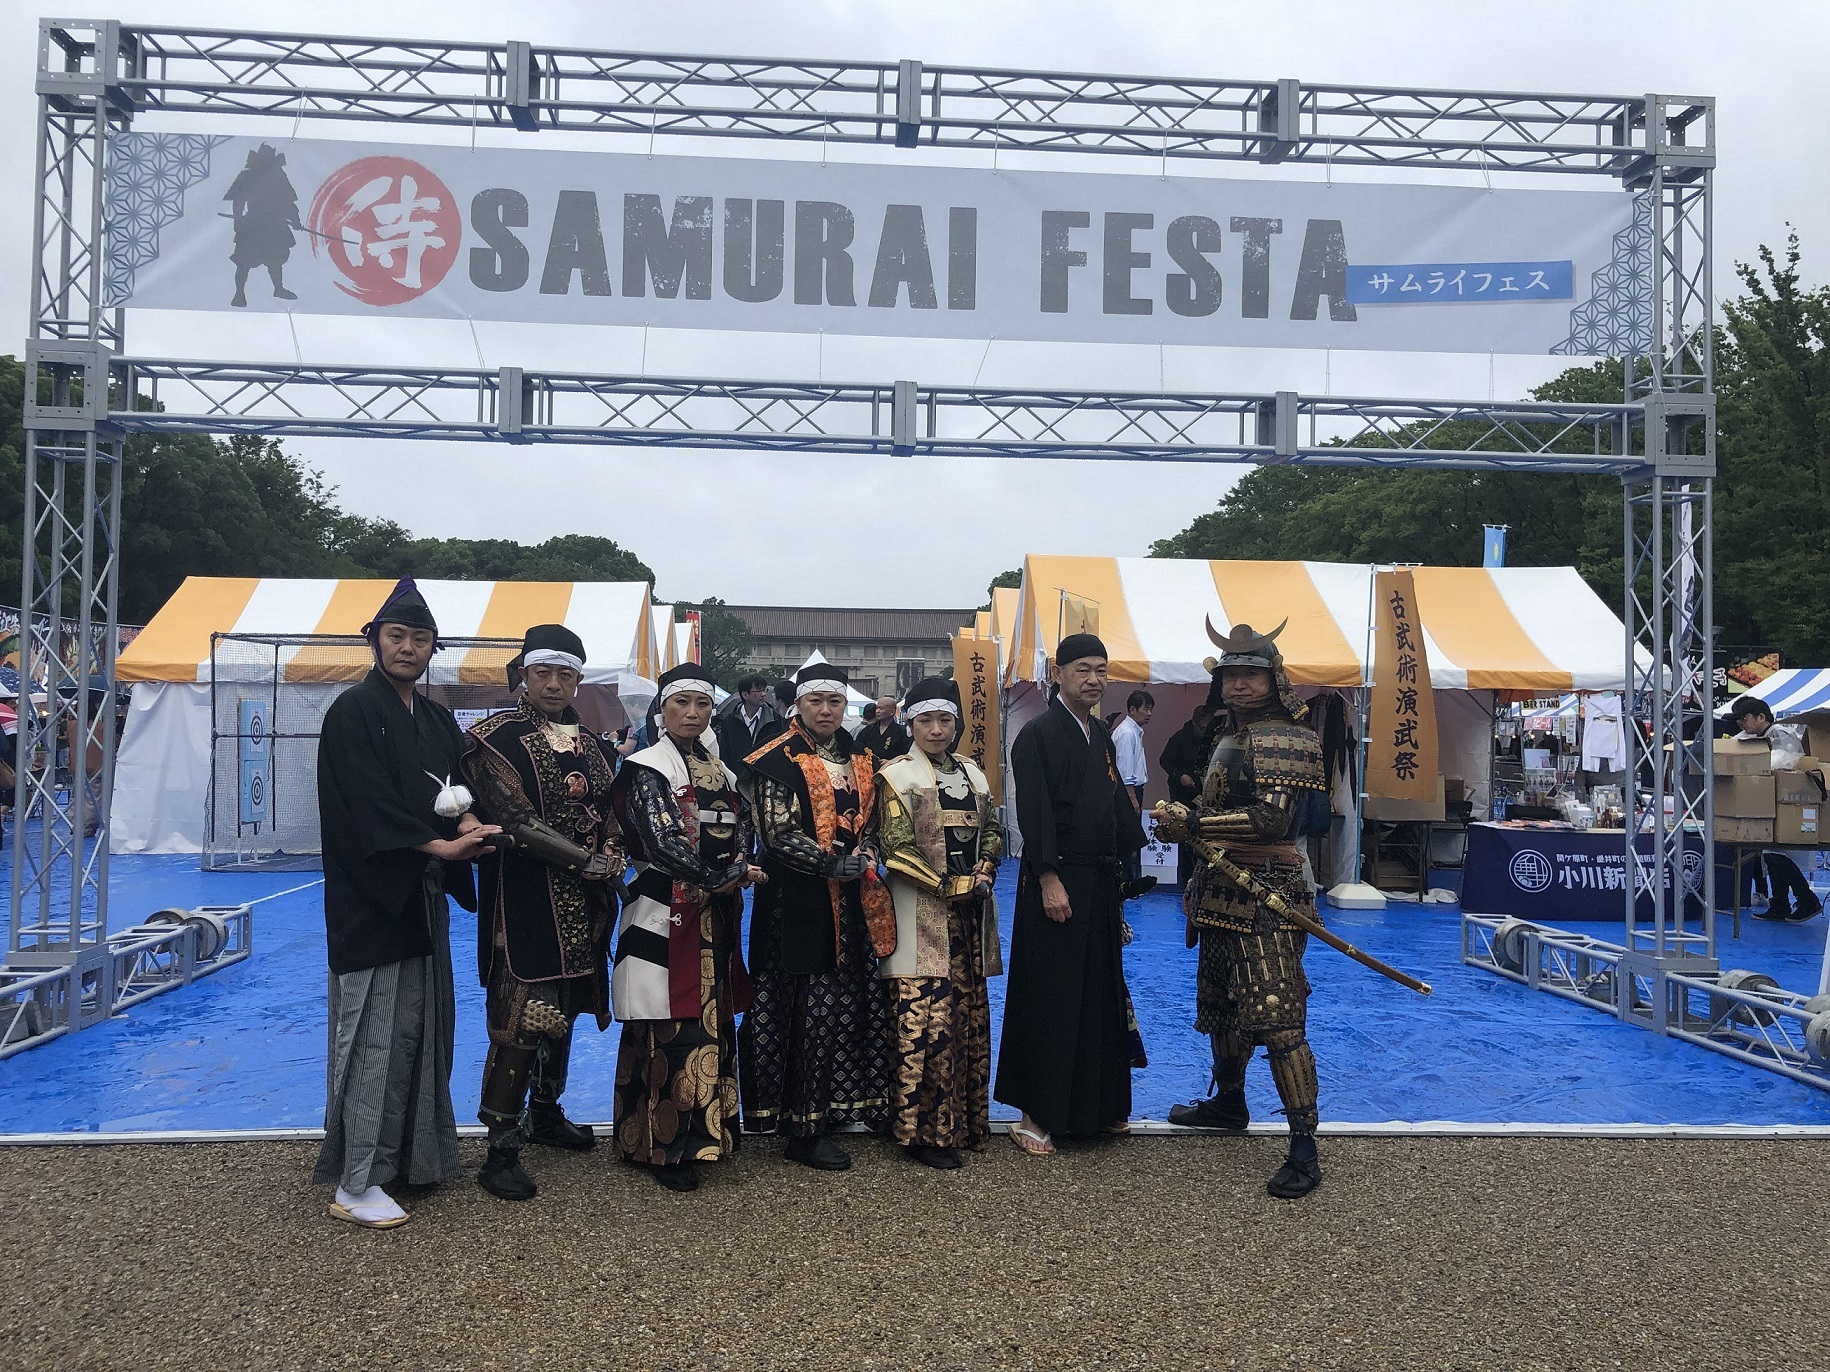 侍(SAMURAI)をテーマにしたイベント
『第5回SAMURAIフェス』を上野恩賜公園(噴水前広場)にて
2月23日(木祝)～26日(日)に開催